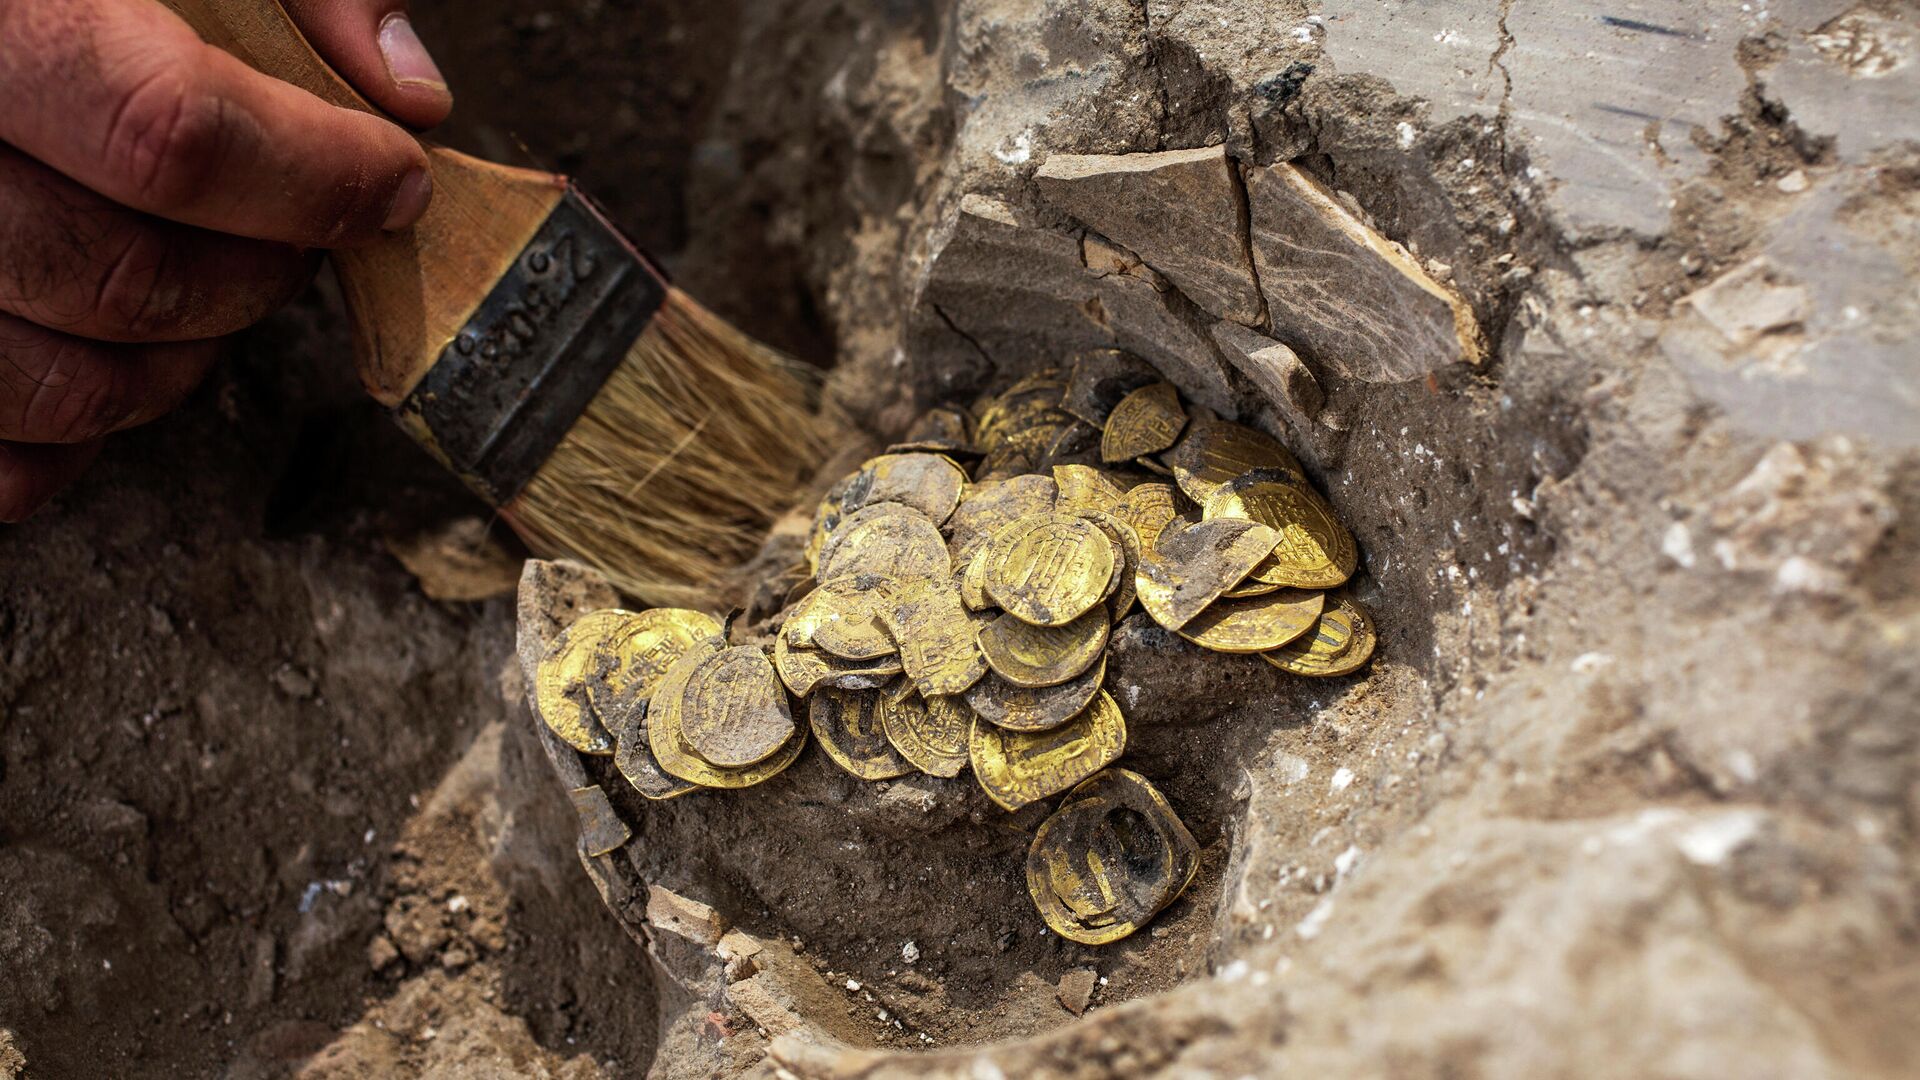 Золотые монеты эпохи династии Аббасидов, найденные археологами в Израиле - РИА Новости, 1920, 25.08.2020